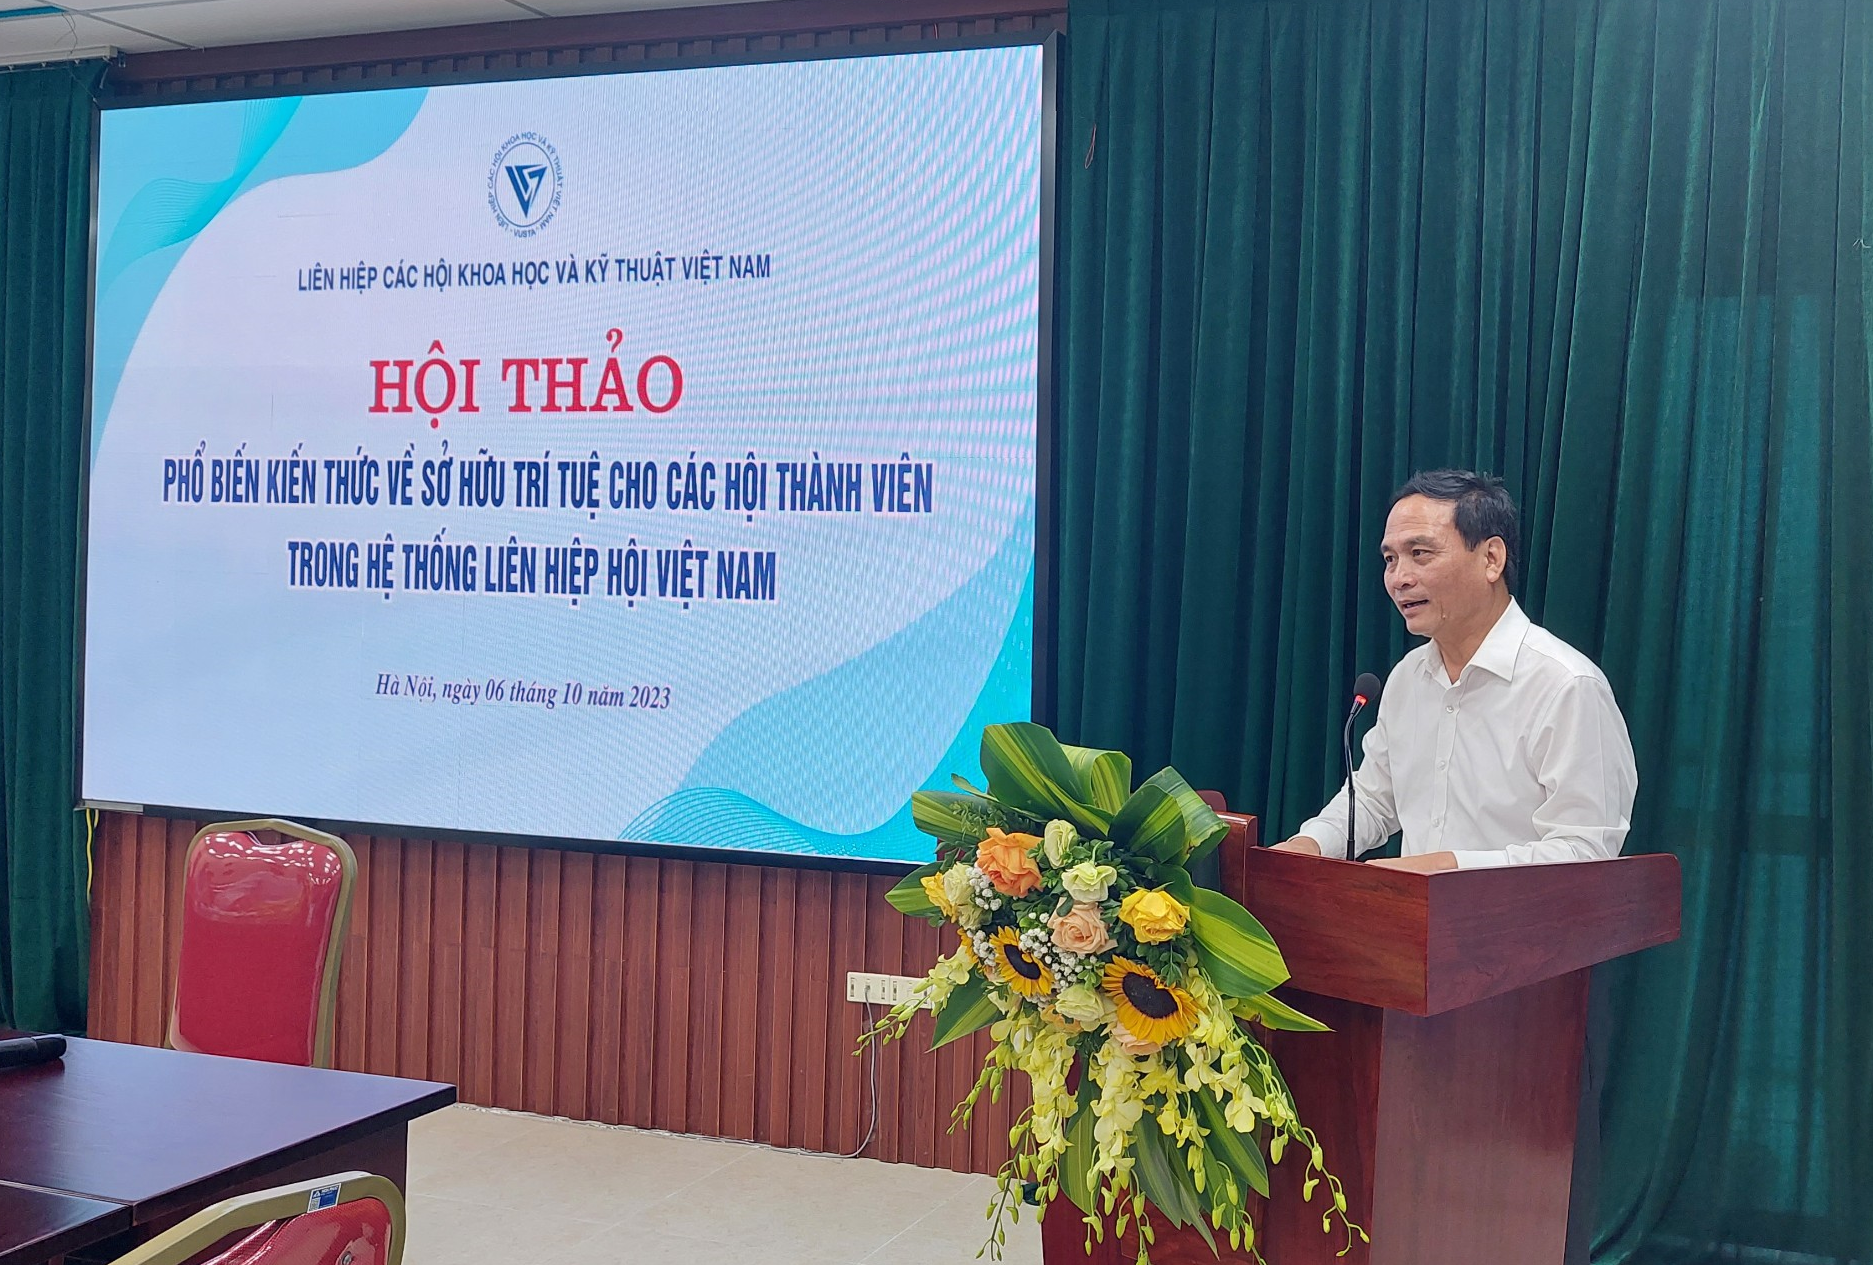 PGS. TS Phạm Ngọc Linh - Phó chủ tịch Liên hiệp hội Việt Nam phát biểu Khai mạc Hội thảo